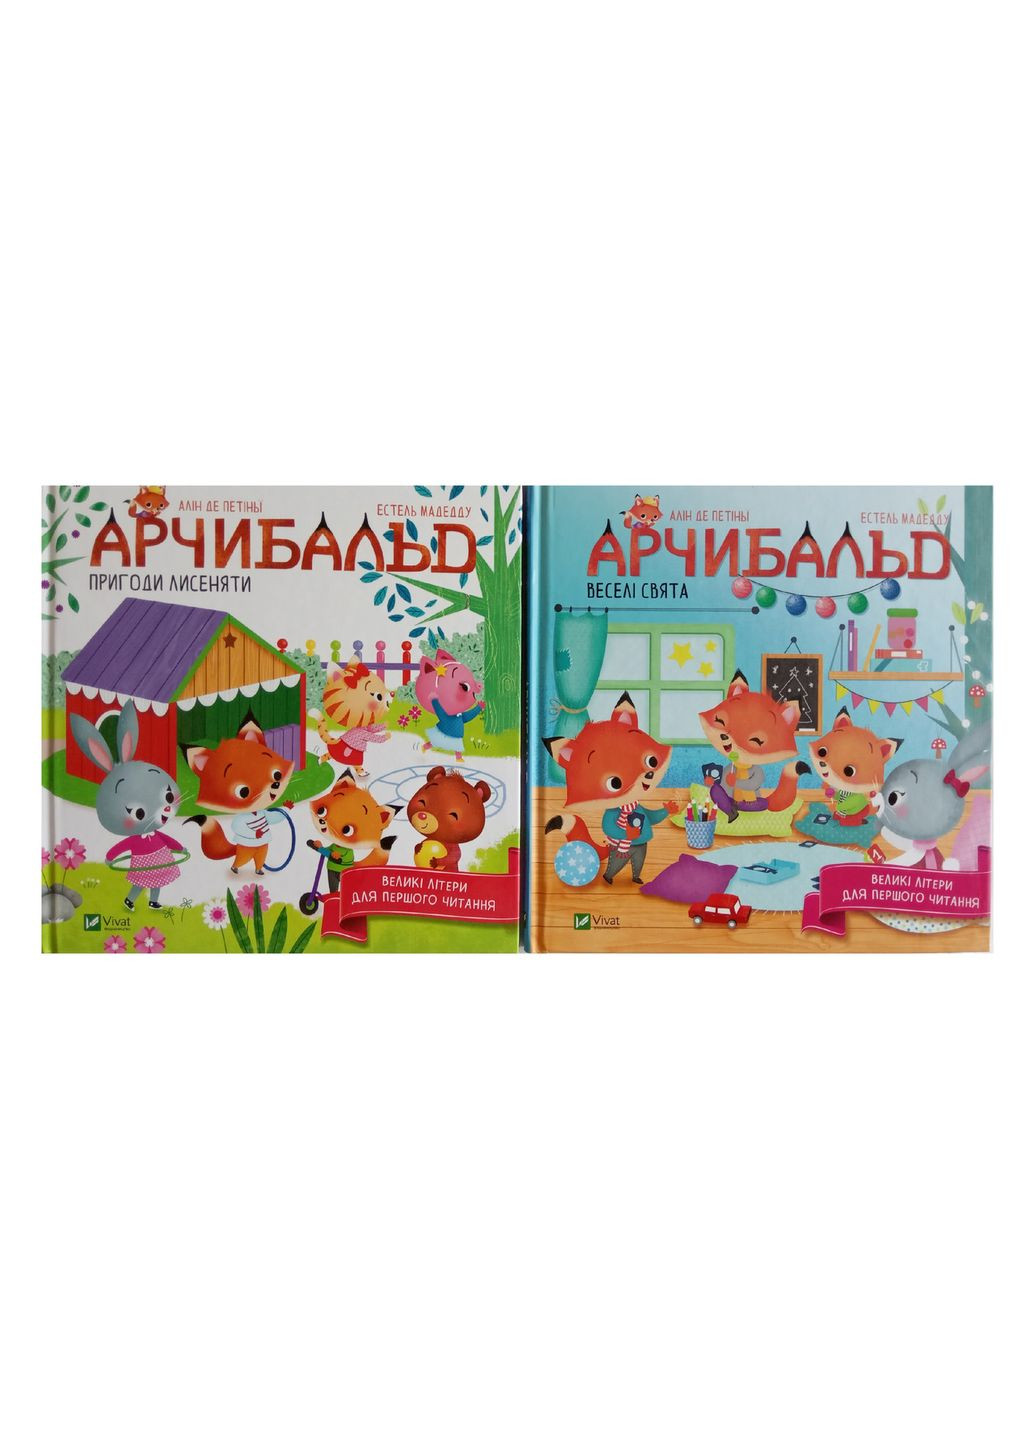 Арчибальд. Комплект из 2х книг (на украинском языке) Vivat (273239287)